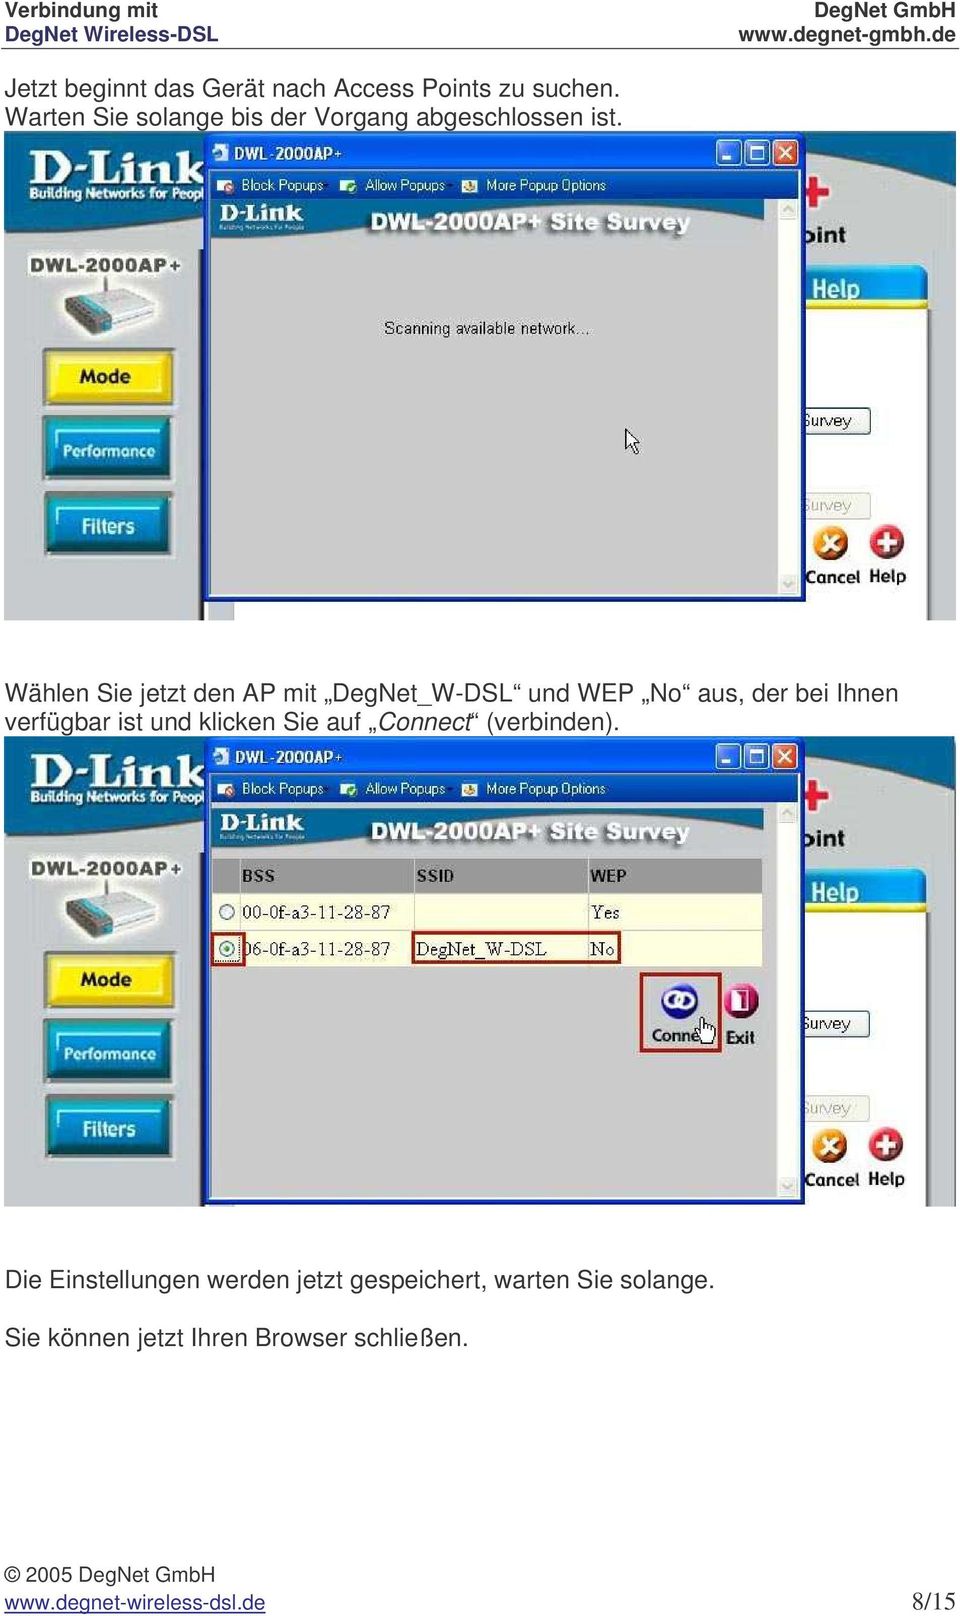 Wählen Sie jetzt den AP mit DegNet_W-DSL und WEP No aus, der bei Ihnen verfügbar ist und